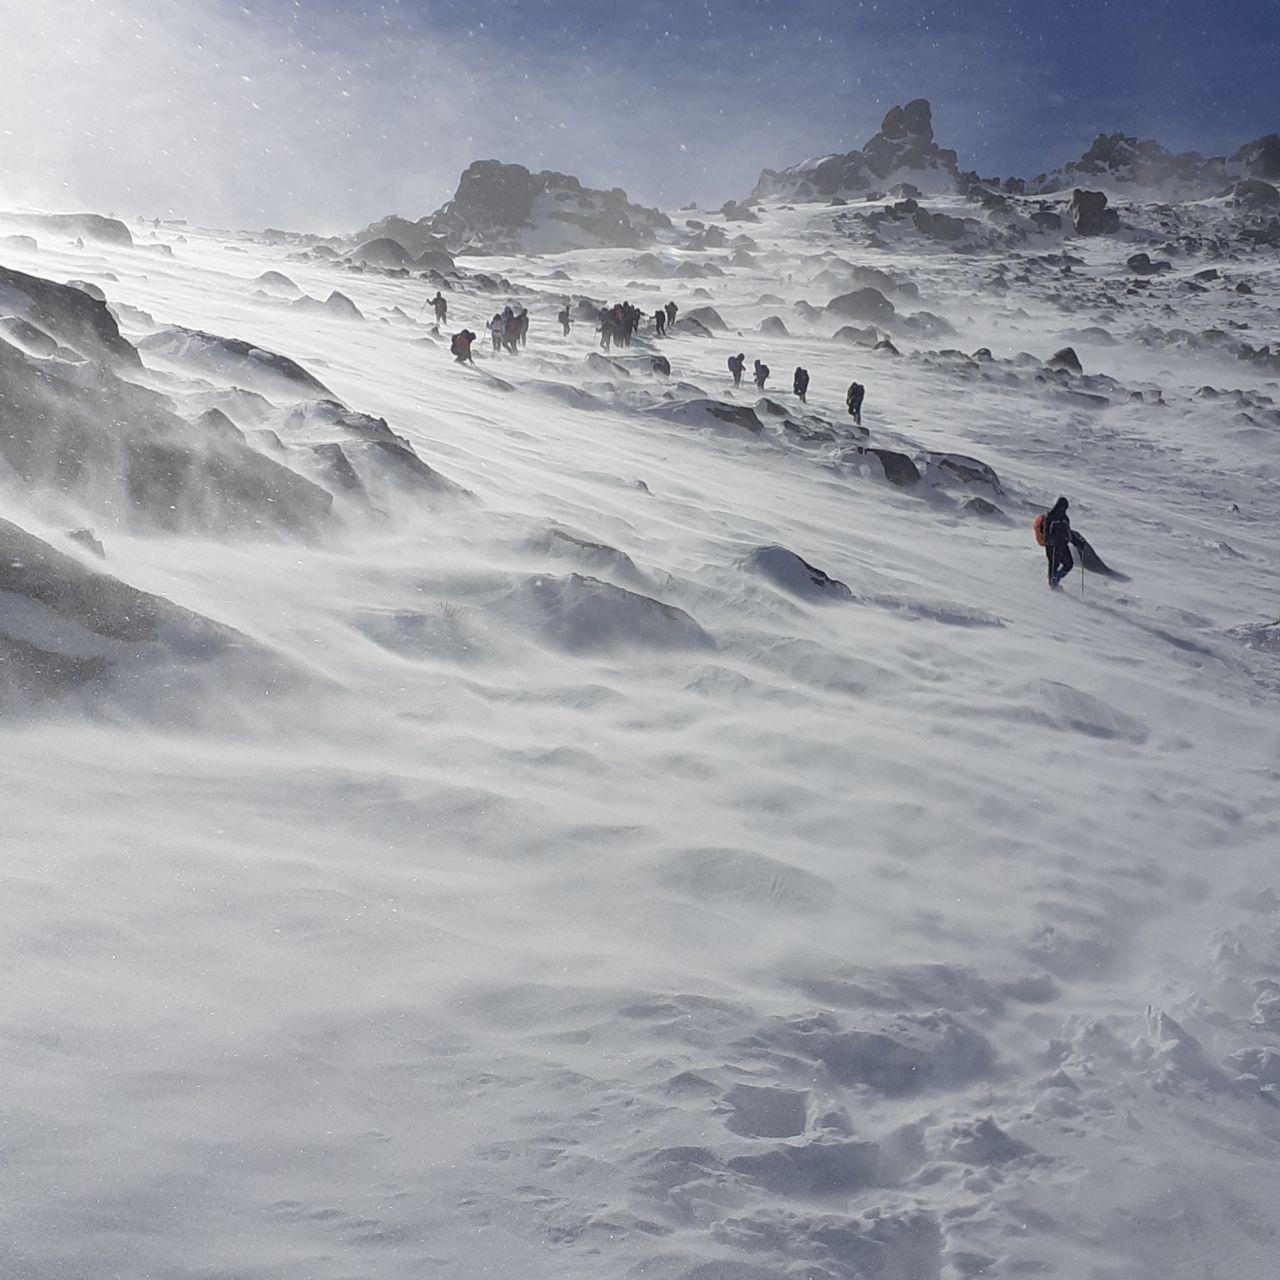 صعود زمستانی به قله 3420 متر ی الوند بهمن ماه 98 در شرایط کولاک